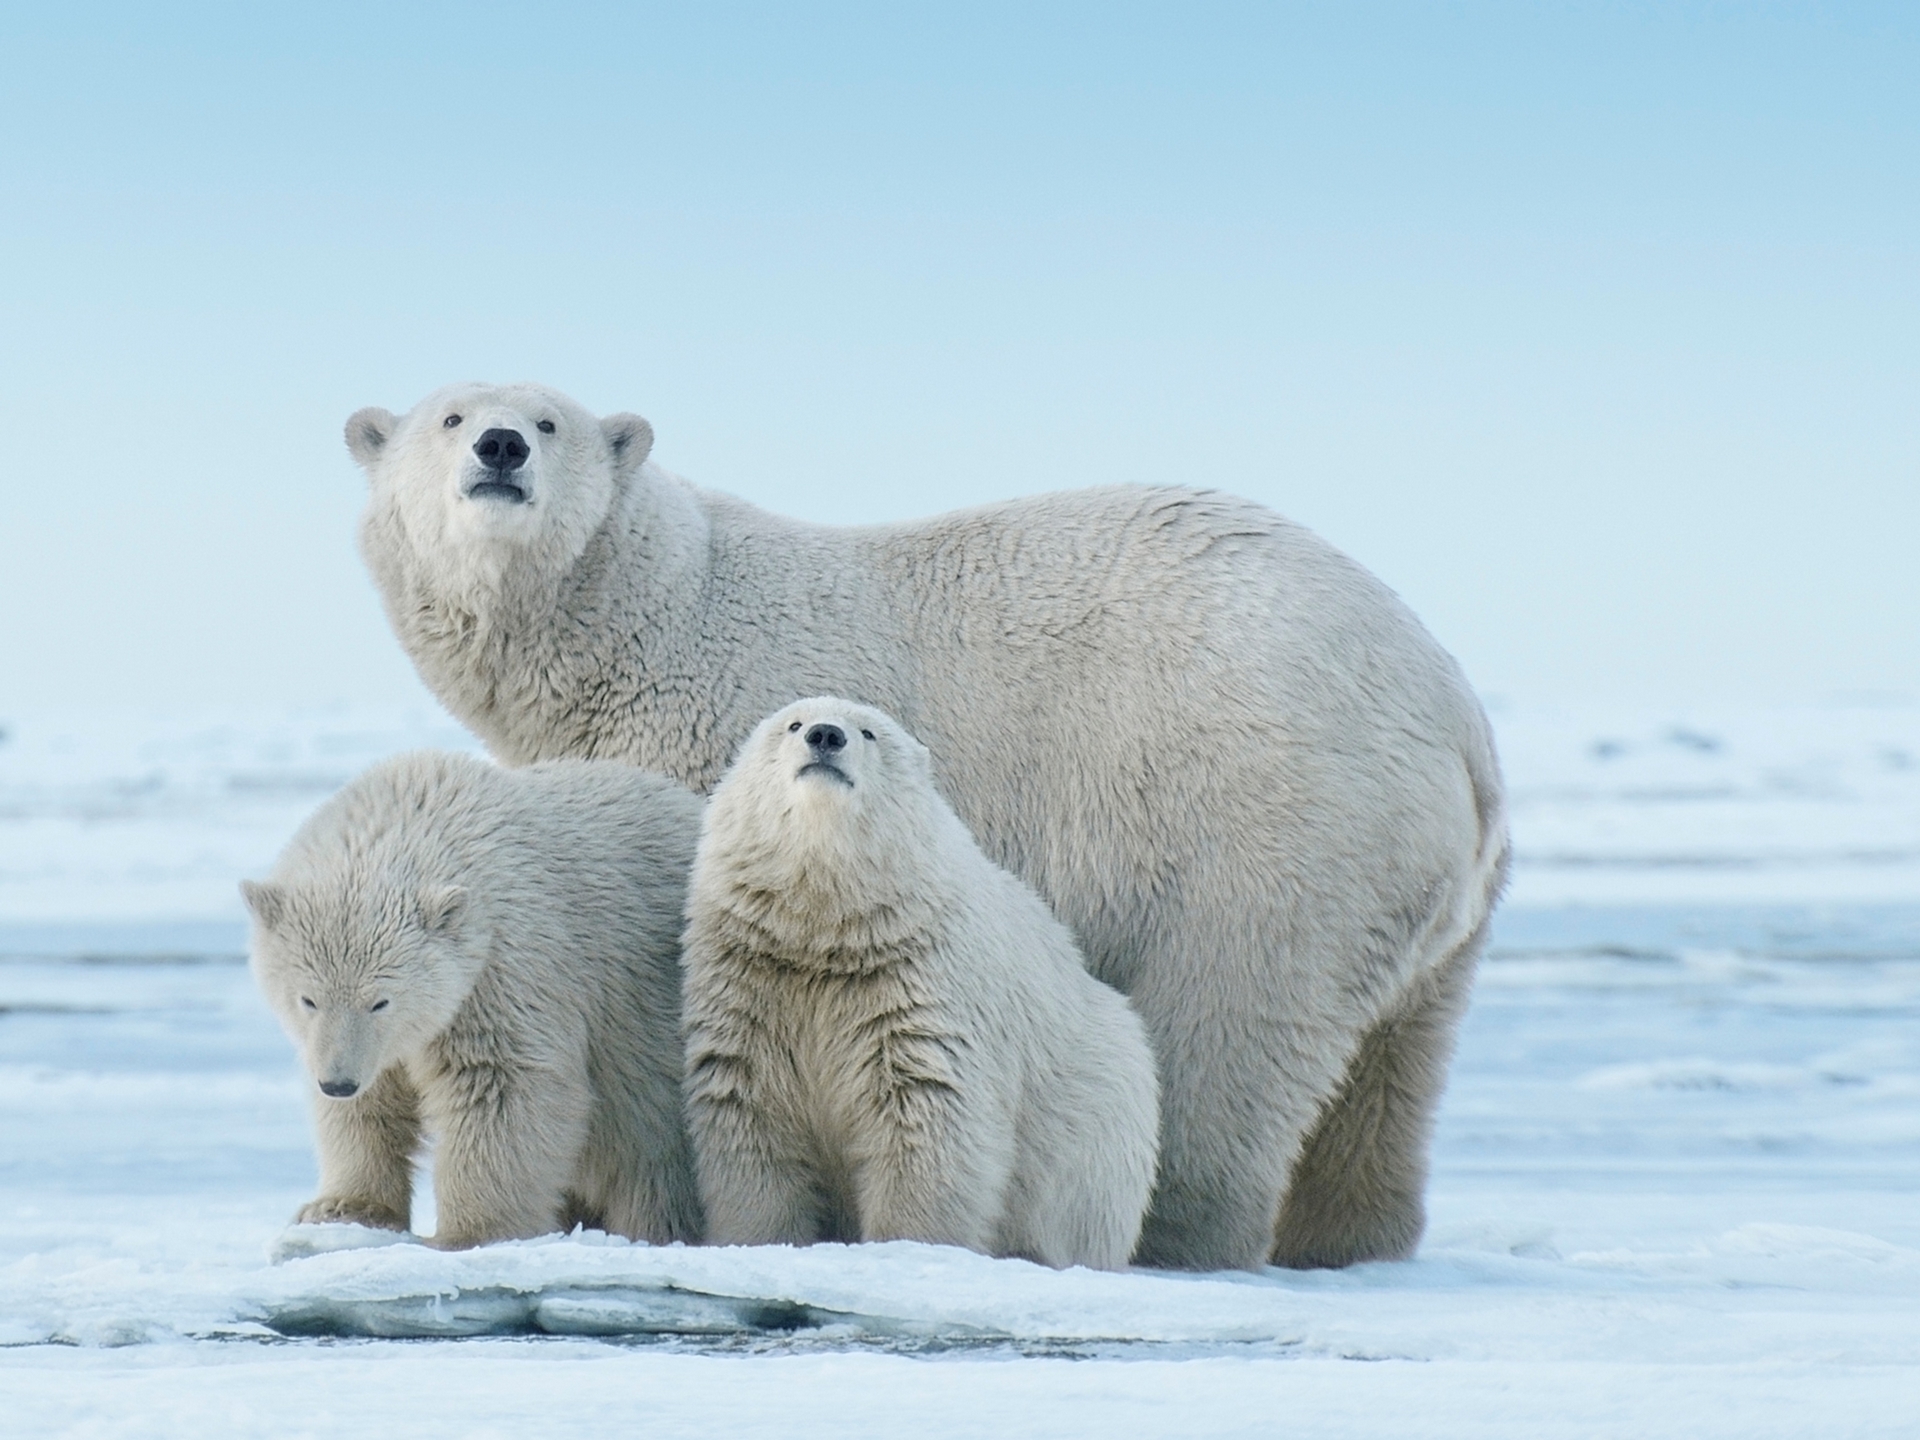 2023年，阿拉斯加有一頭北極熊死於禽流感，是該物種紀錄上的首例。這種掠食動物已面臨許多威脅，尤其是海冰融化的問題，圖中這個棲息在北極國家野生動物保護區的家庭也不例外。PHOTOGRAPH BY FLORIAN SCHULZ, NAT GEO IMAGE COLLECTION 